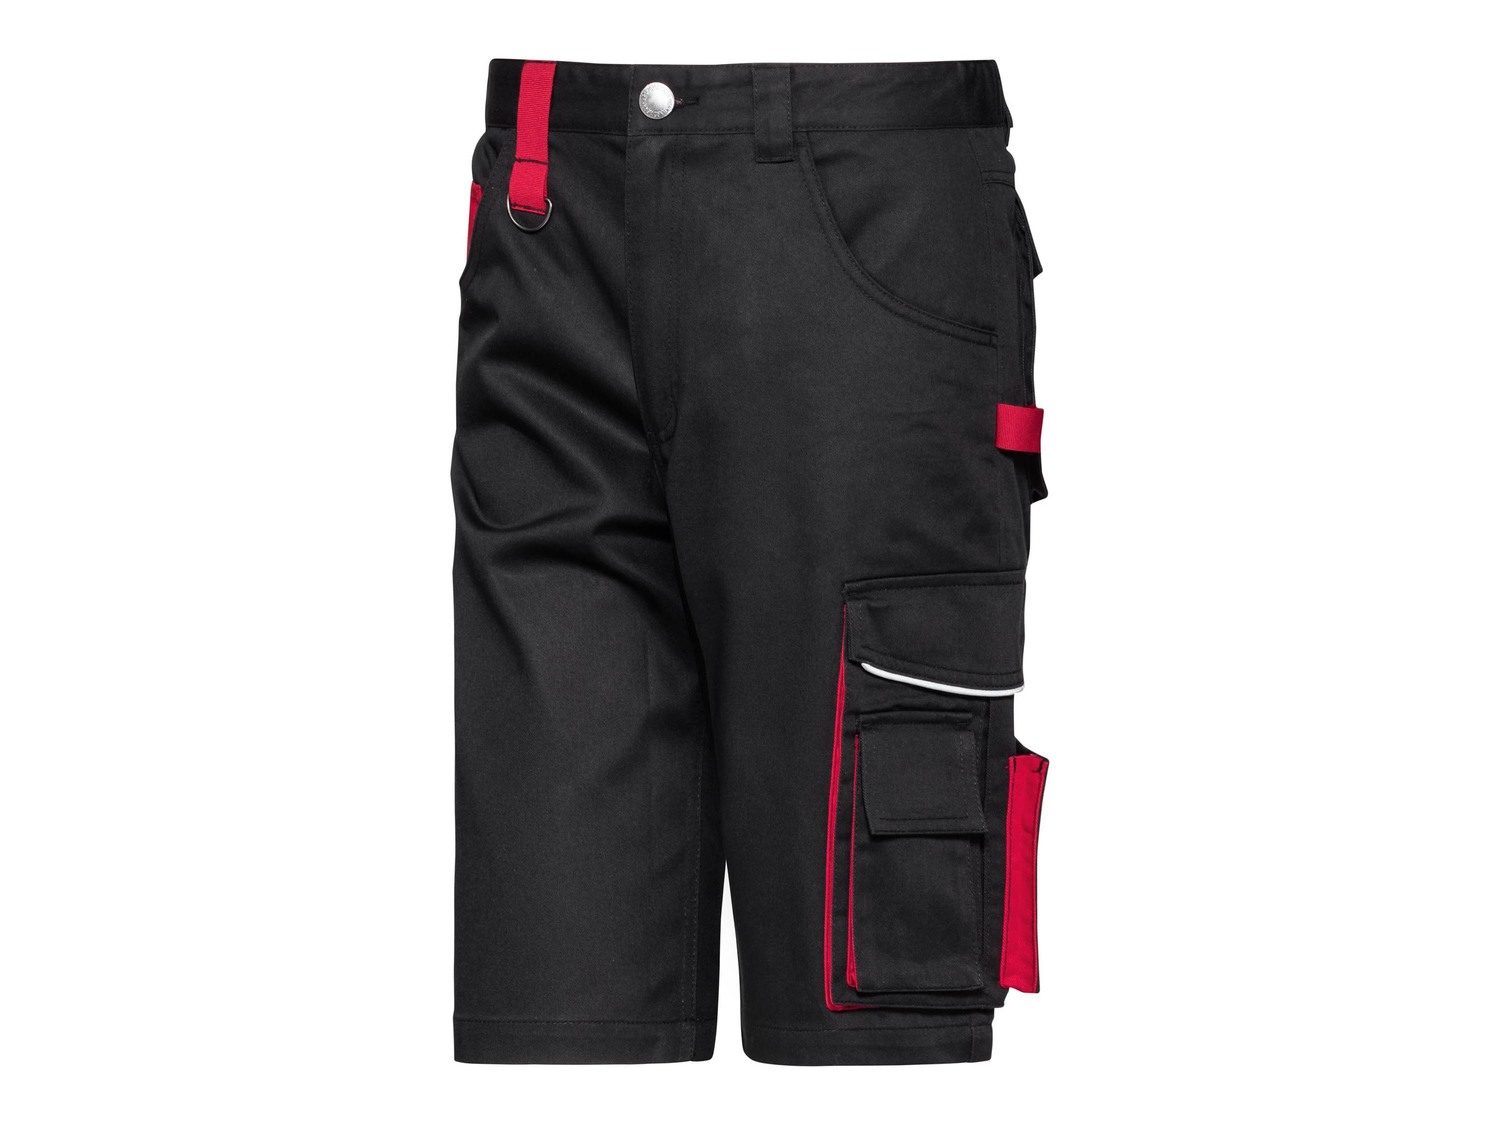 Pantaloni corti da lavoro per uomo Powerfix, prezzo 8.99 &#8364; 
- Idrorepellente
- ...